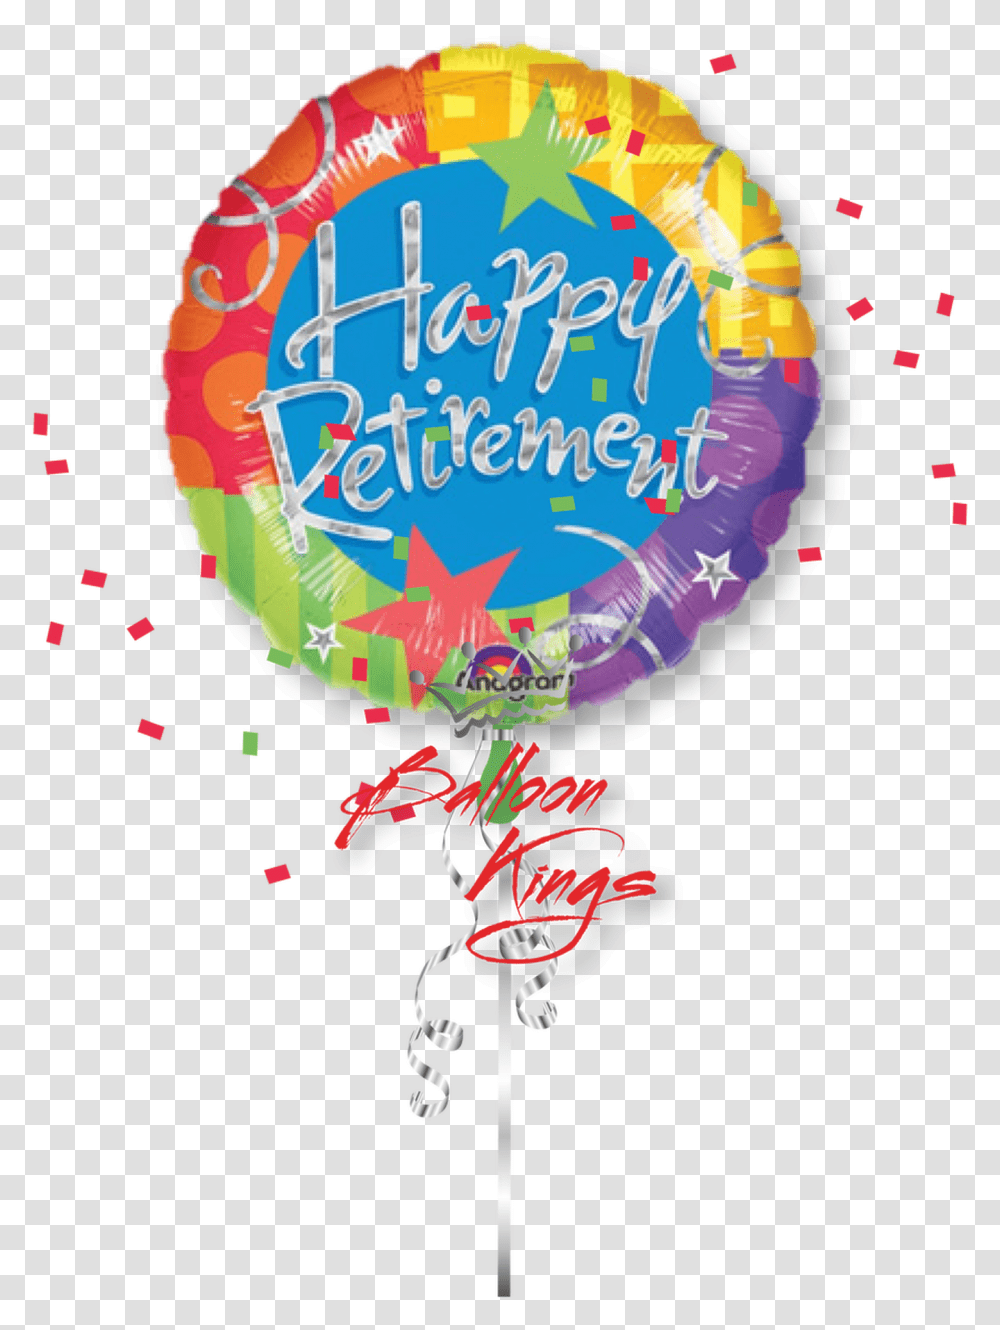 Large Happy Retirement Blitz Happy Retirement Images Cartoon, Paper, Poster, Advertisement Transparent Png